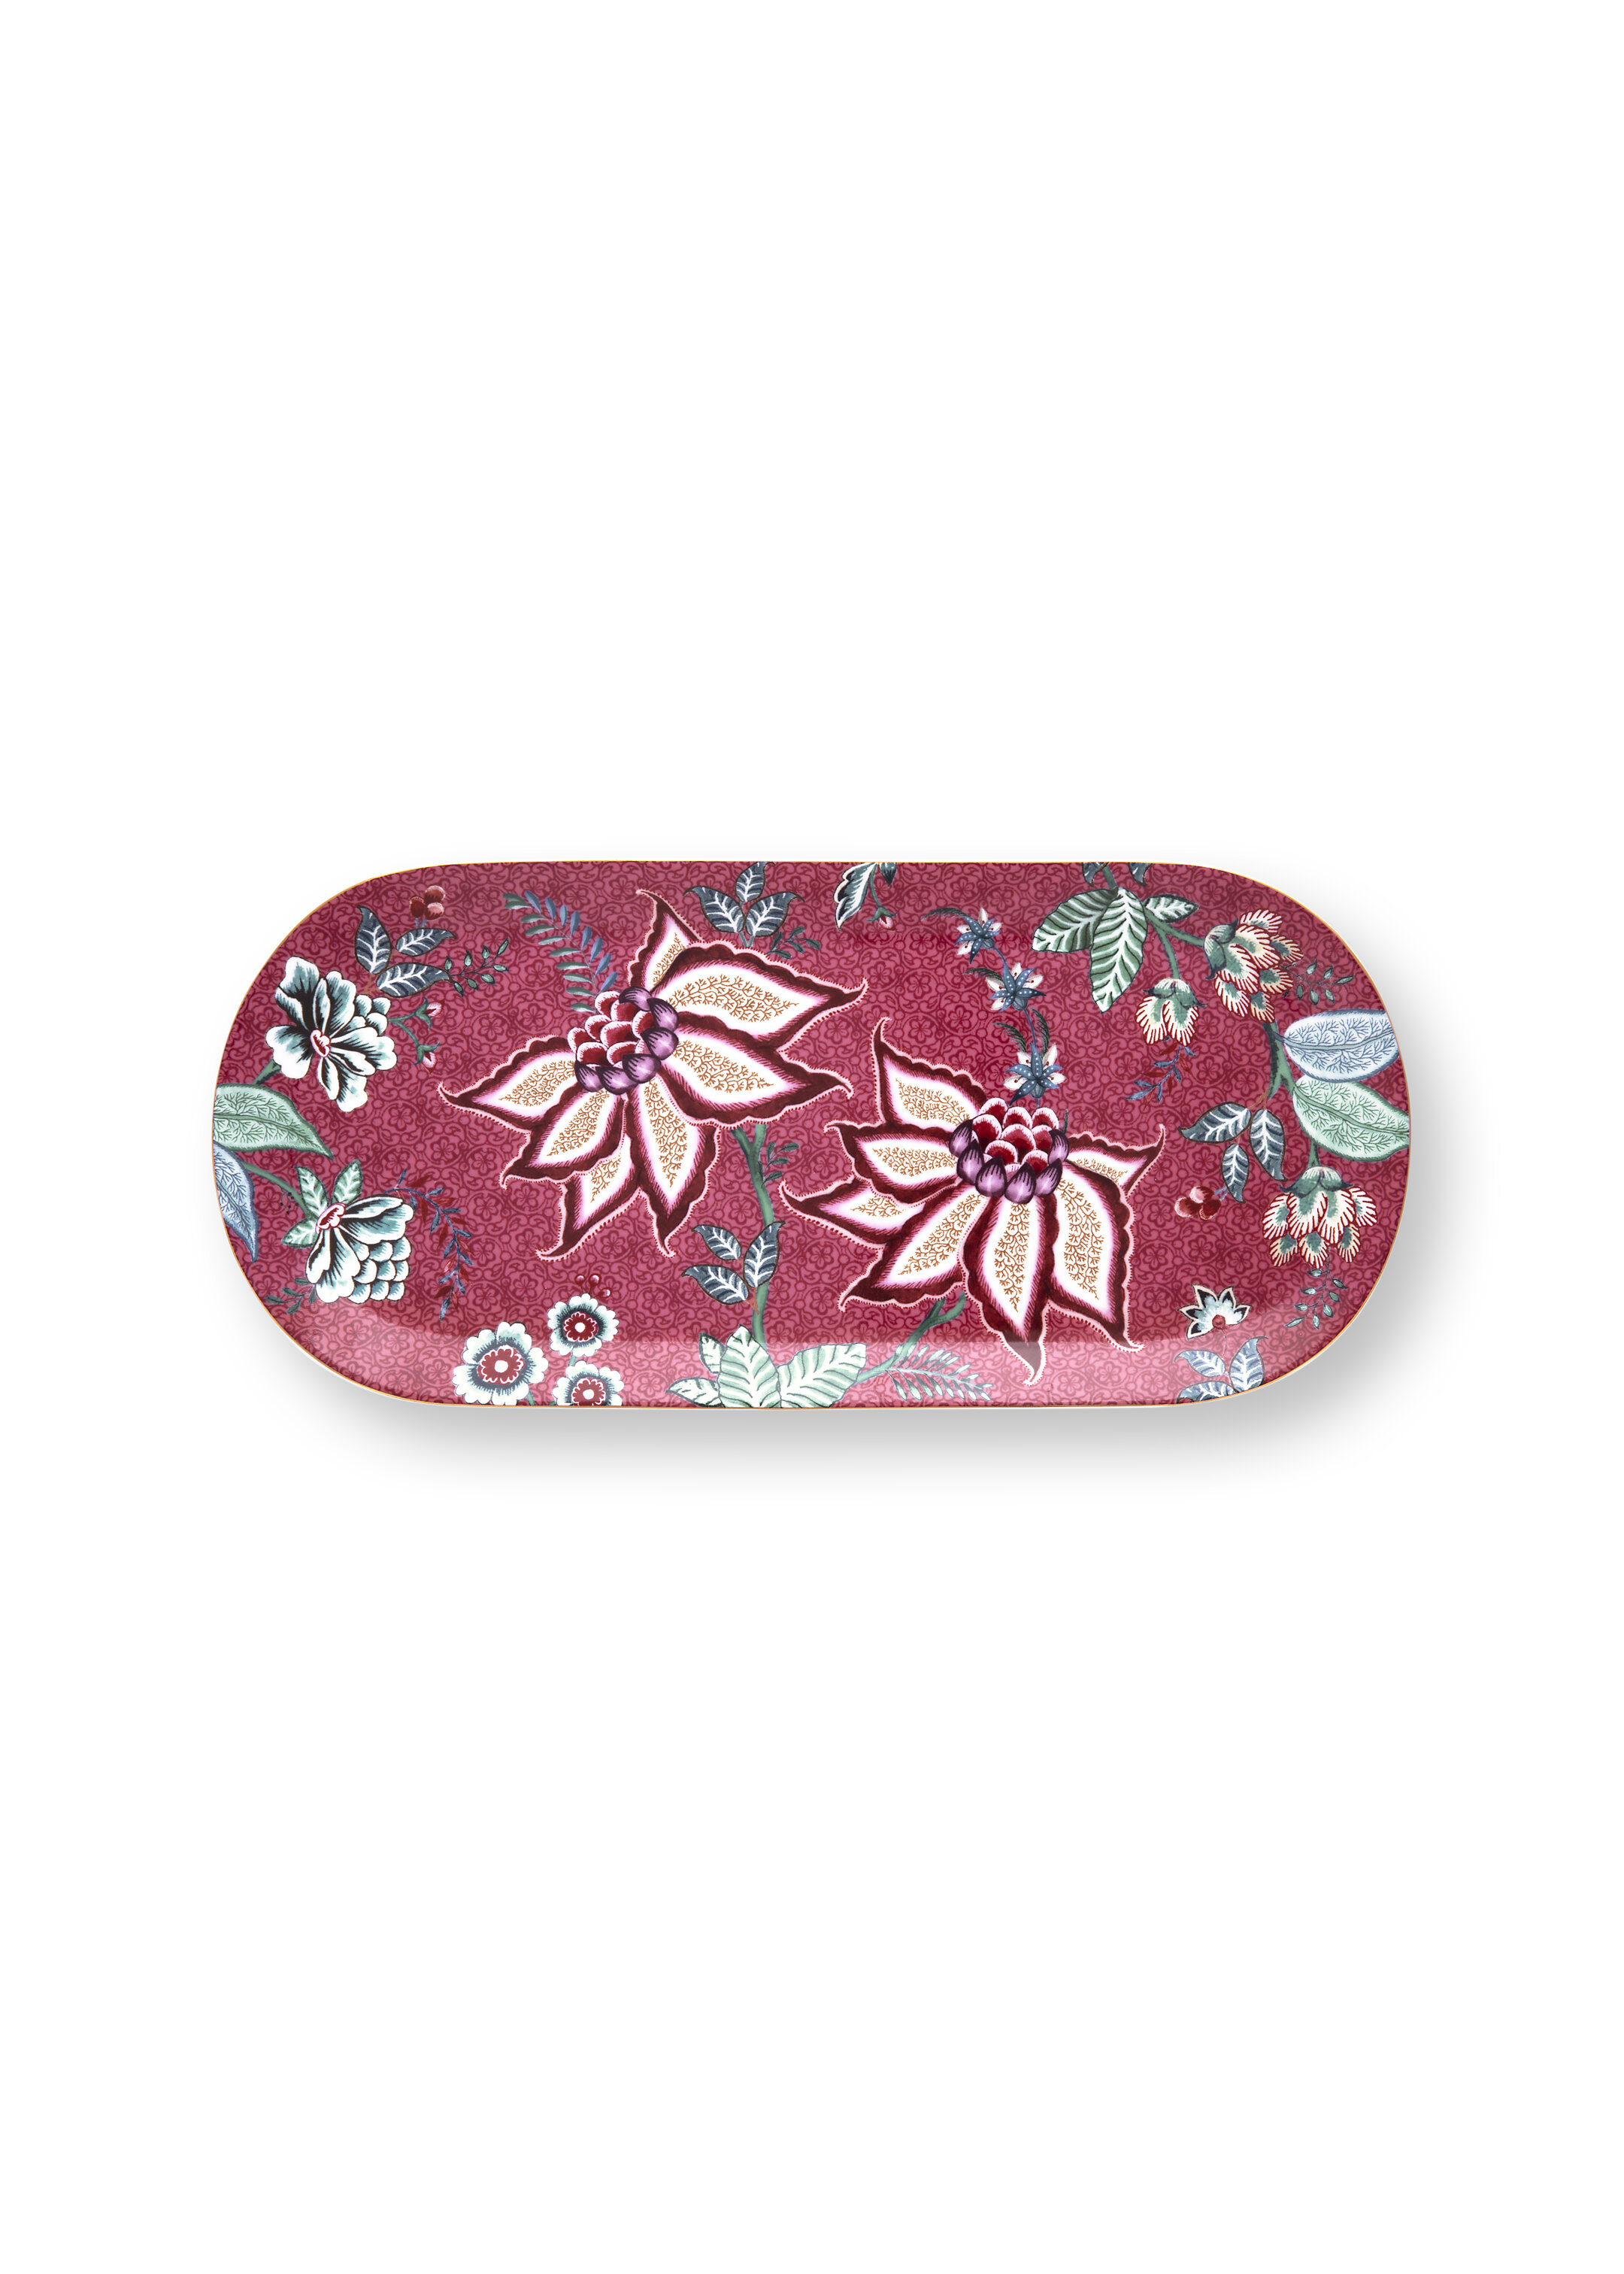 NEW EDITION - Flower Festival, dark pink tortenplatte, 33,3x15,5cm